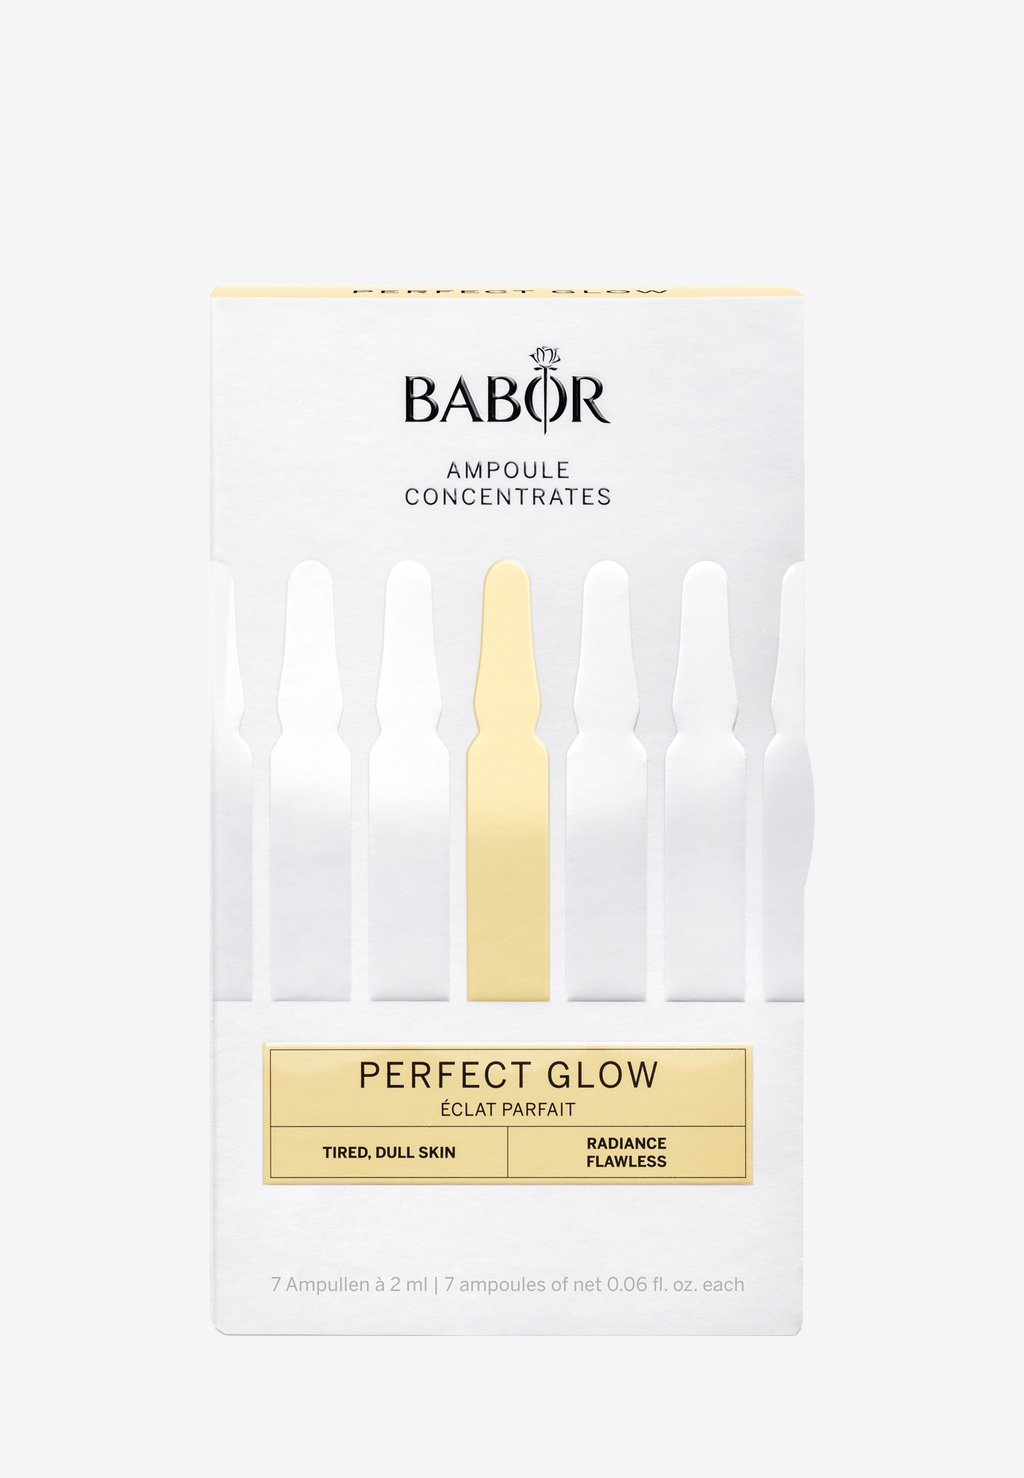 Набор для ухода за кожей Perfect Glow BABOR набор для ухода за кожей sos de blemish kit babor